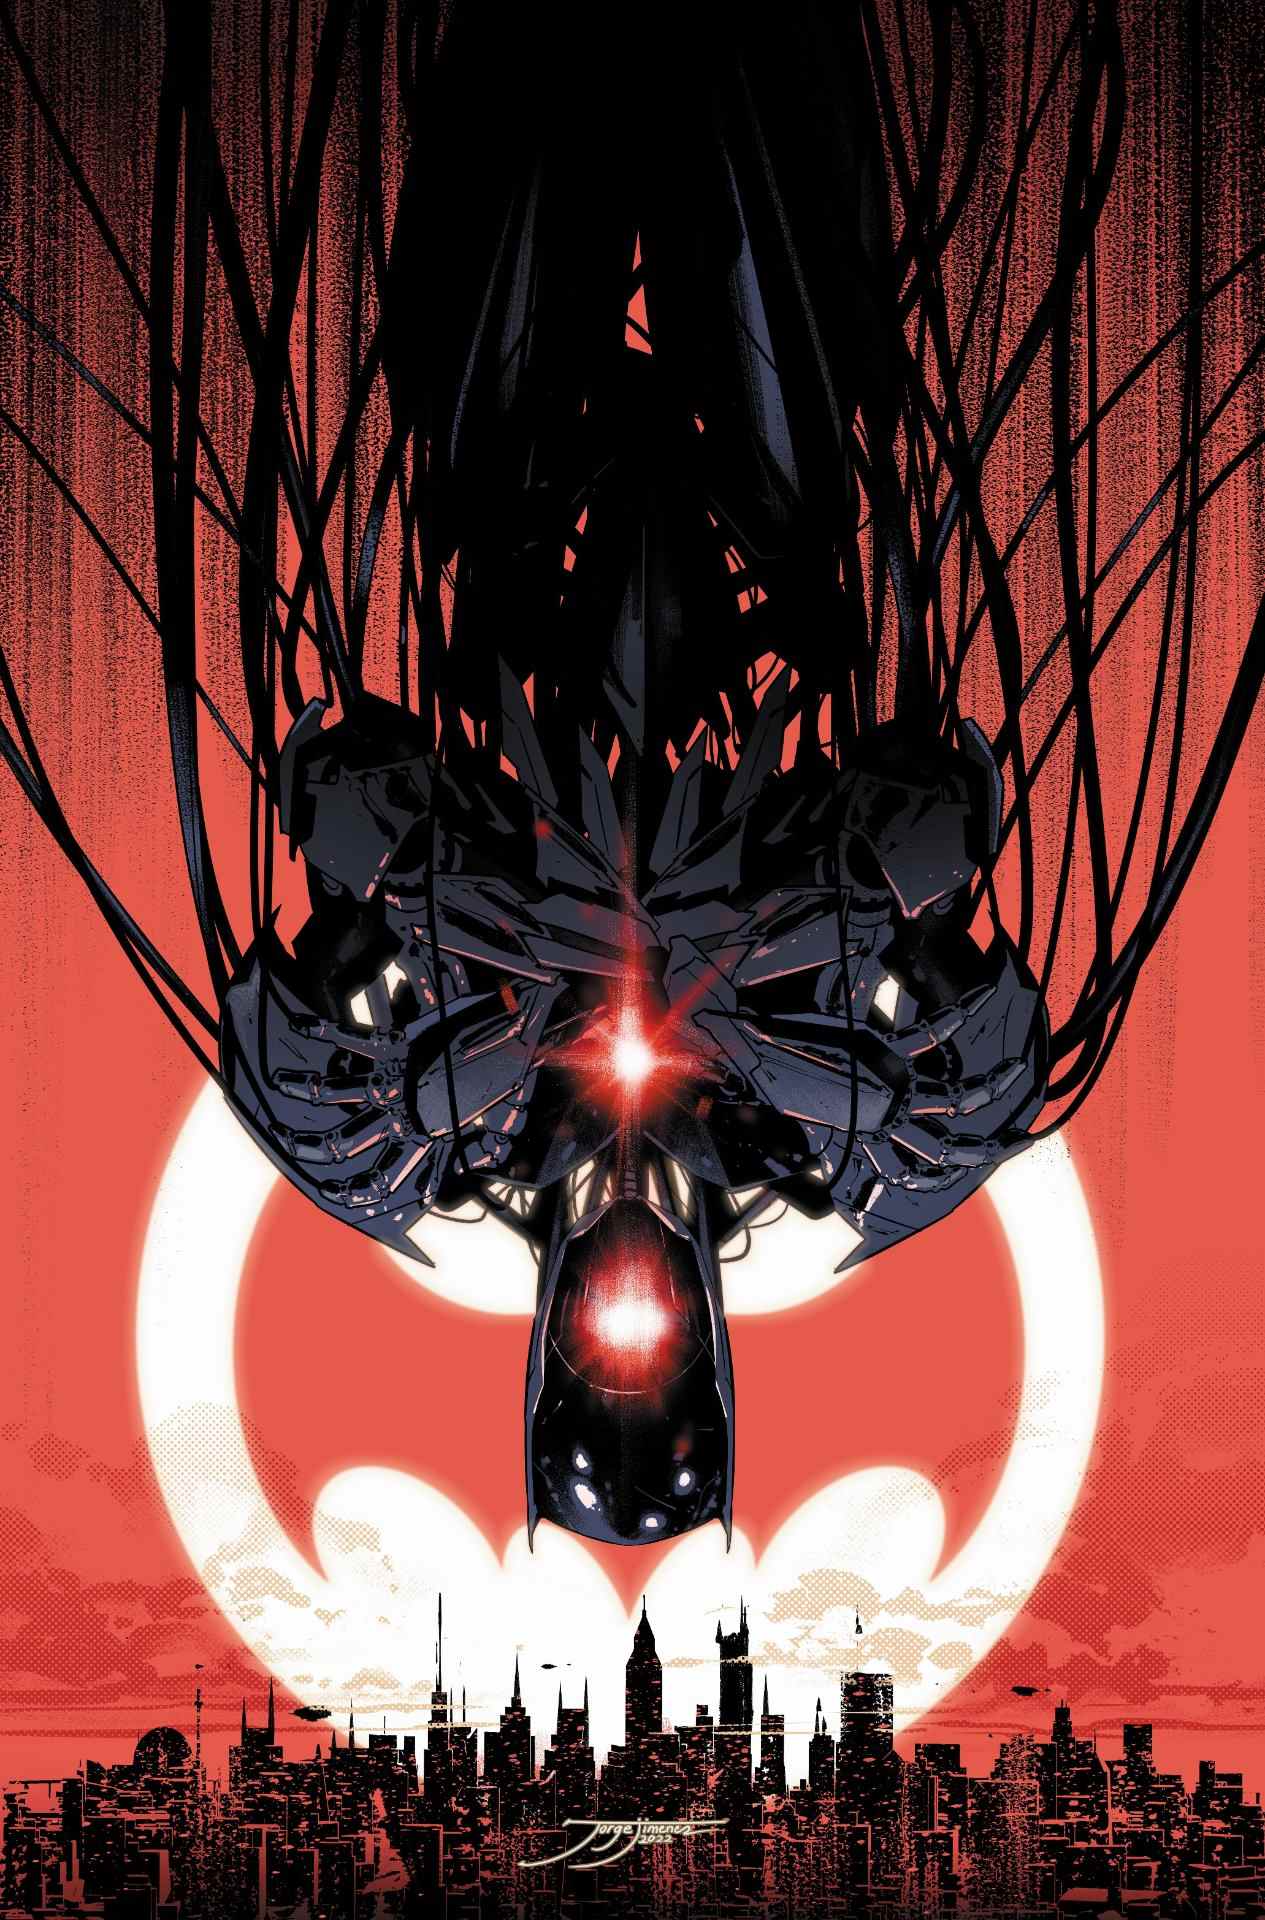 Couverture de Batman #129 par Jorge Jiménez